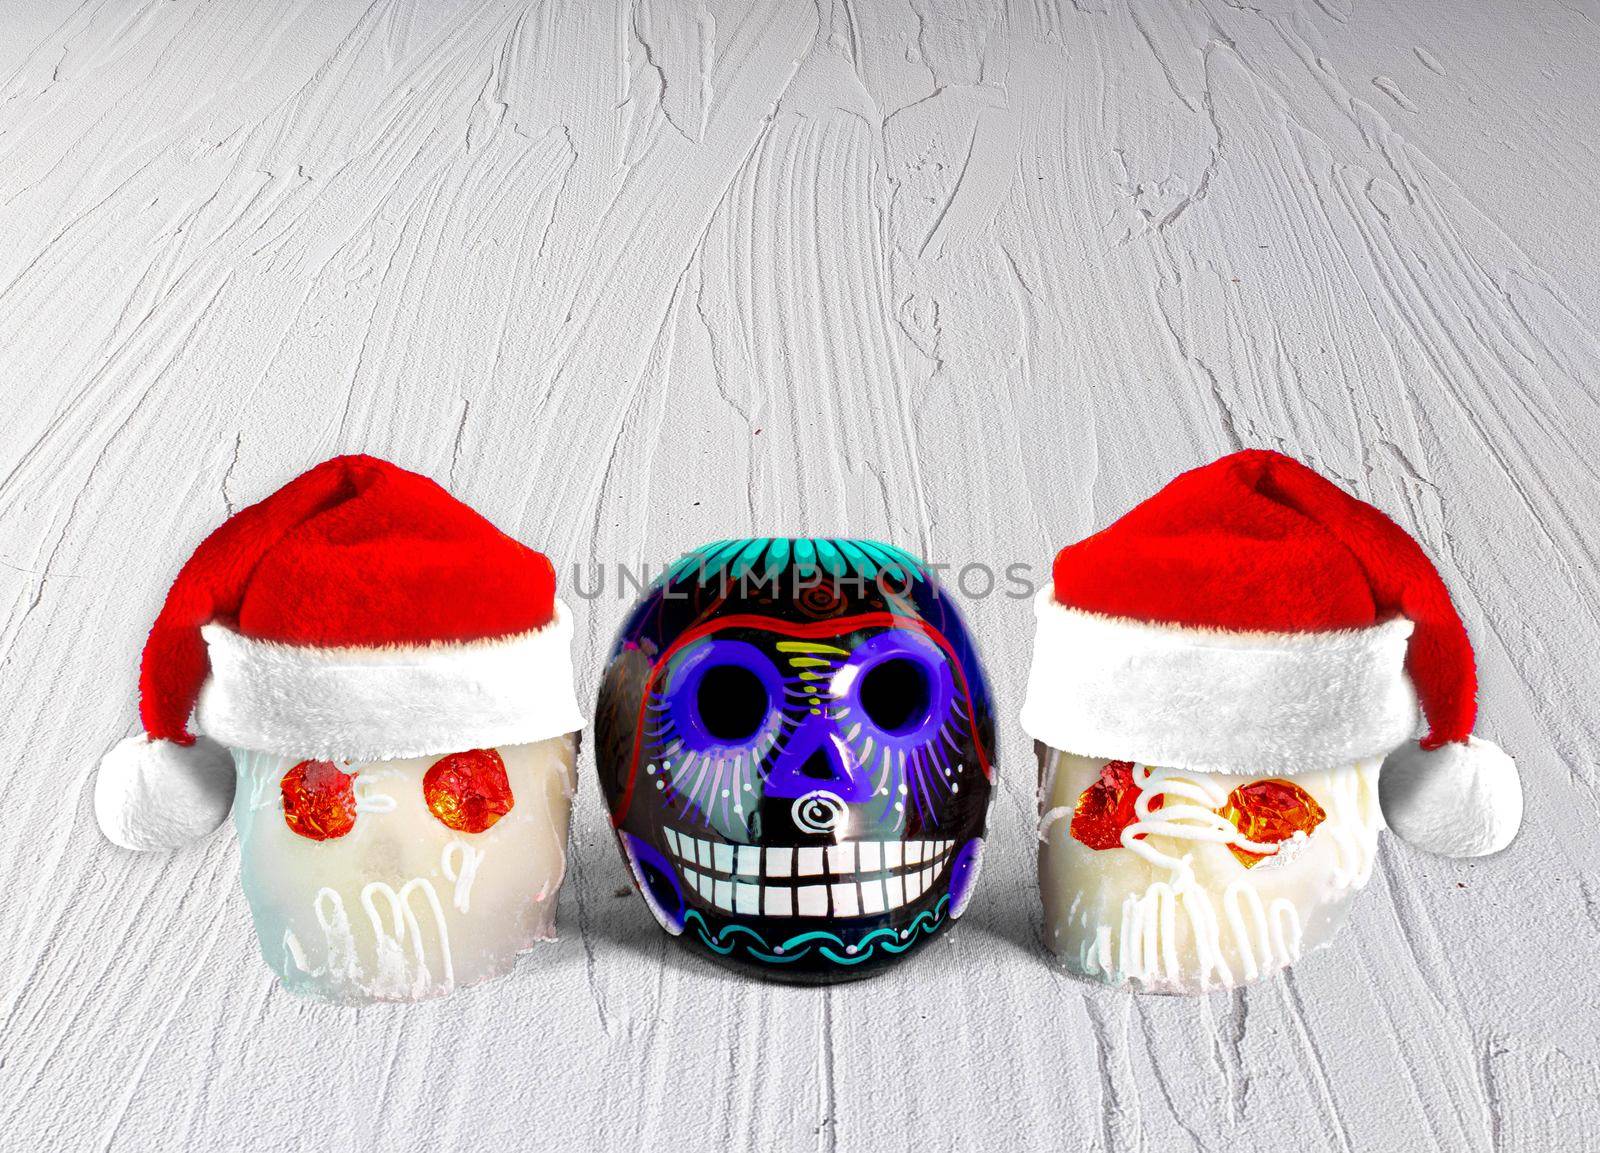 Traditional Mexican sugar skulls with Santa hats. Mexican Christmas.(calaveritas de azucar para navidad en México) mix cultures. by oasisamuel